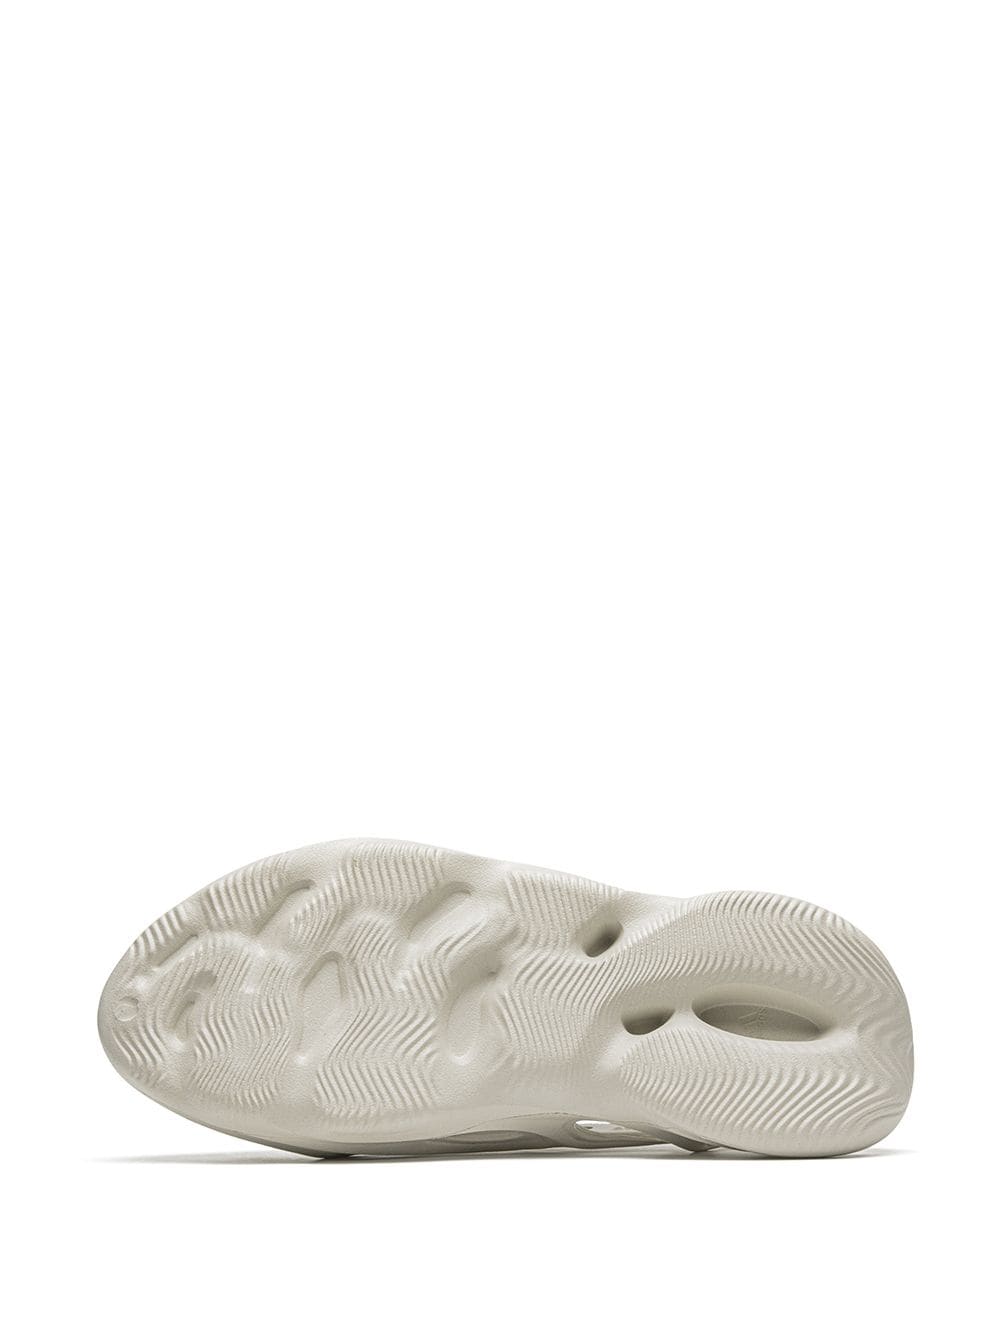 Yeezy x Adidas Off White Rubber Foam RNNR Ararat Sneakers Size 39